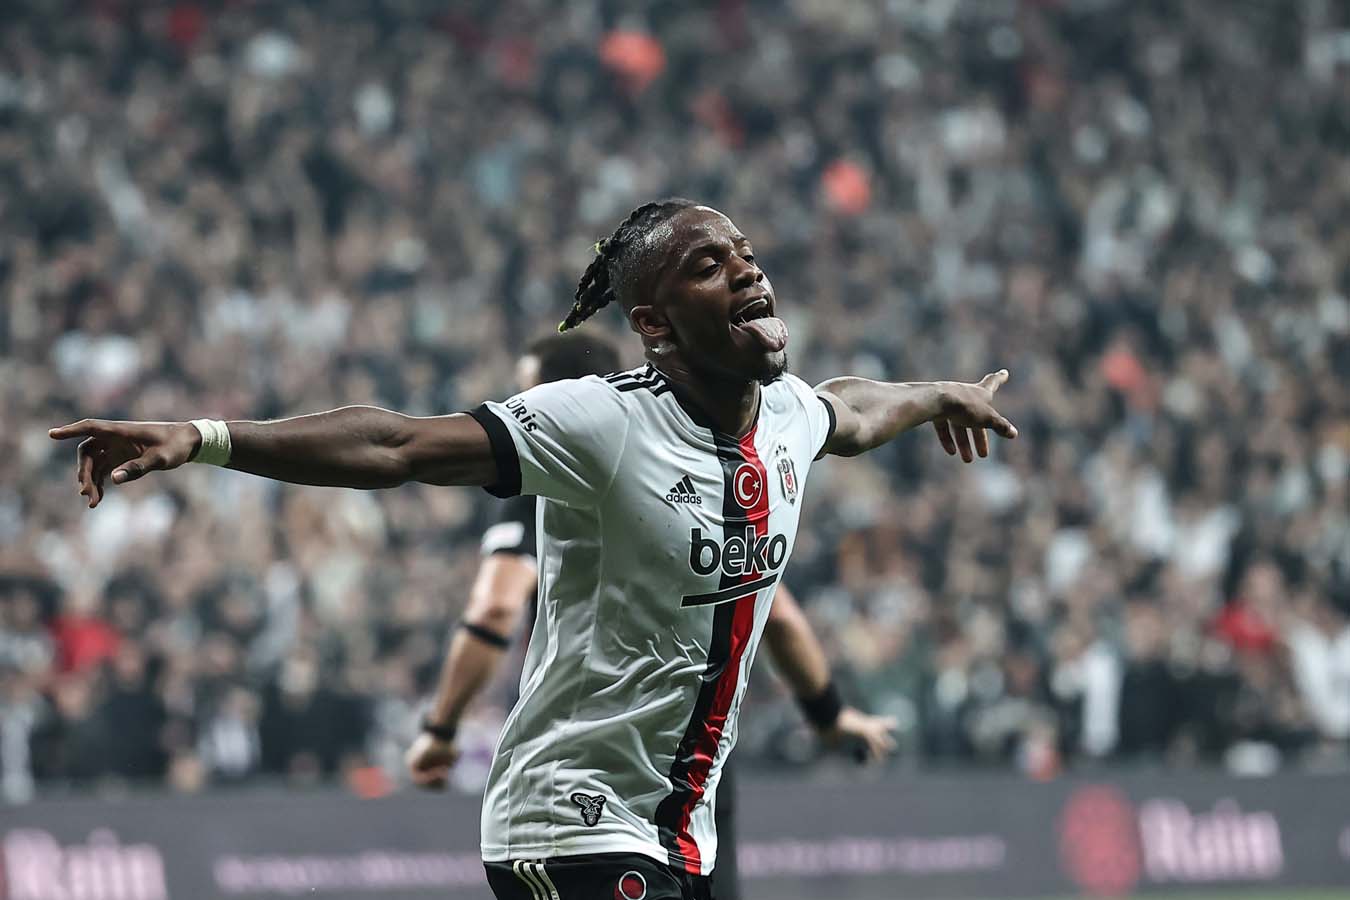 Beşiktaş 4-1 Alanyaspor | Maç sonucu, özeti